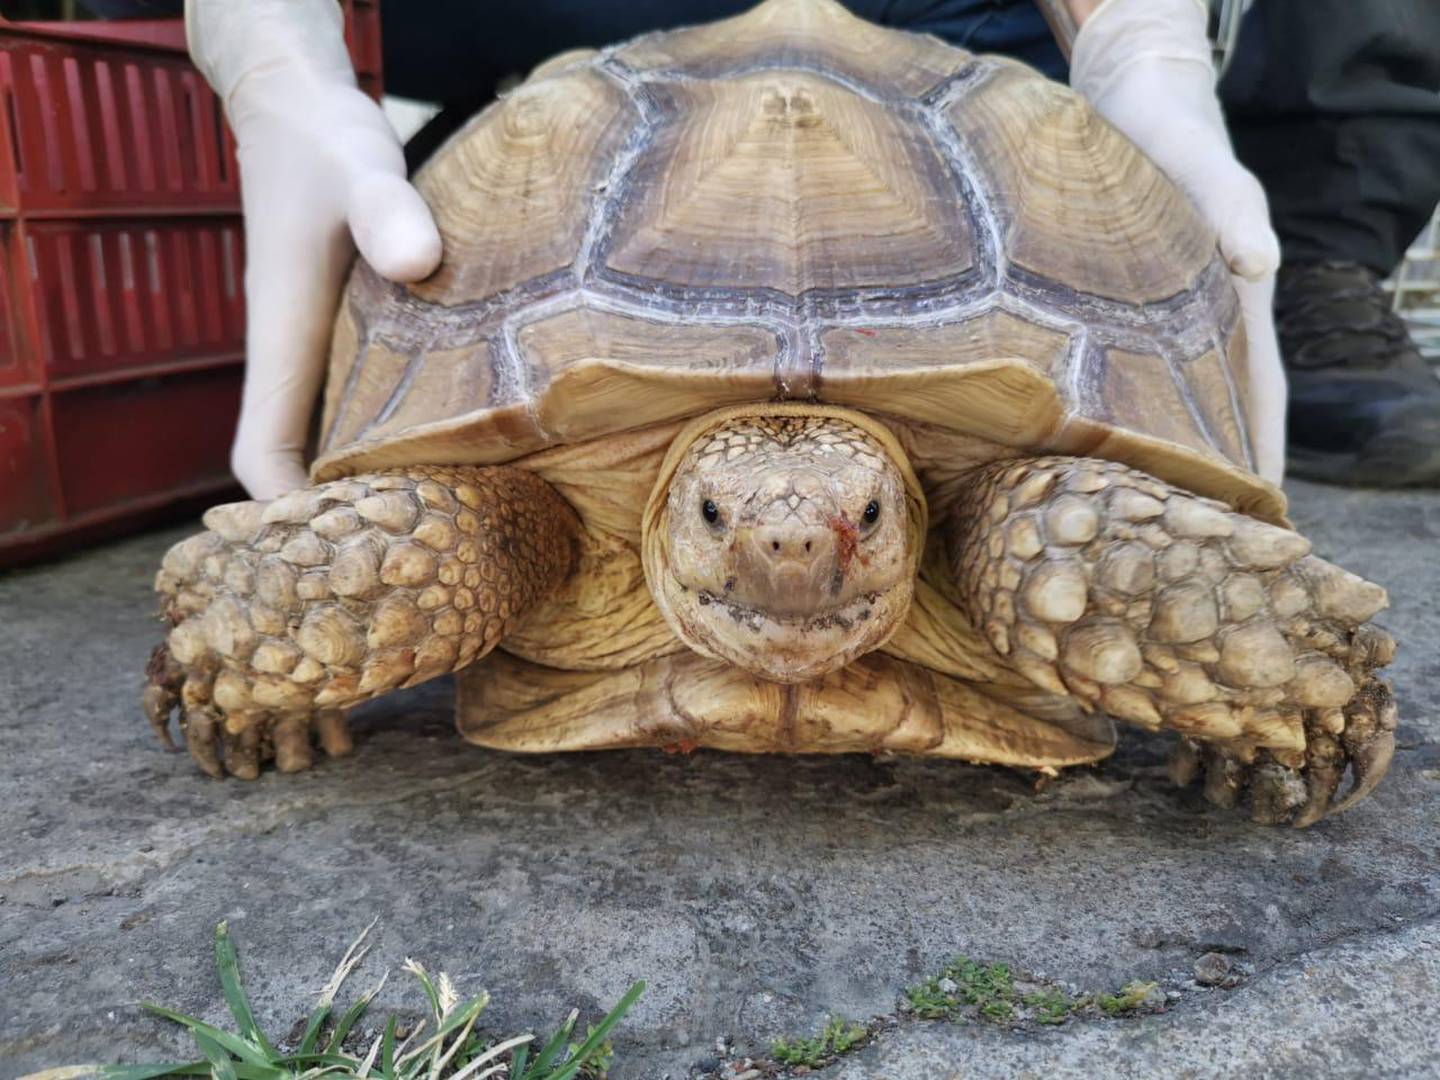 Esta es una de las tortugas decomisadas por el OIJ en San Antonio de Belén. Foto: Cortesía OIJ.